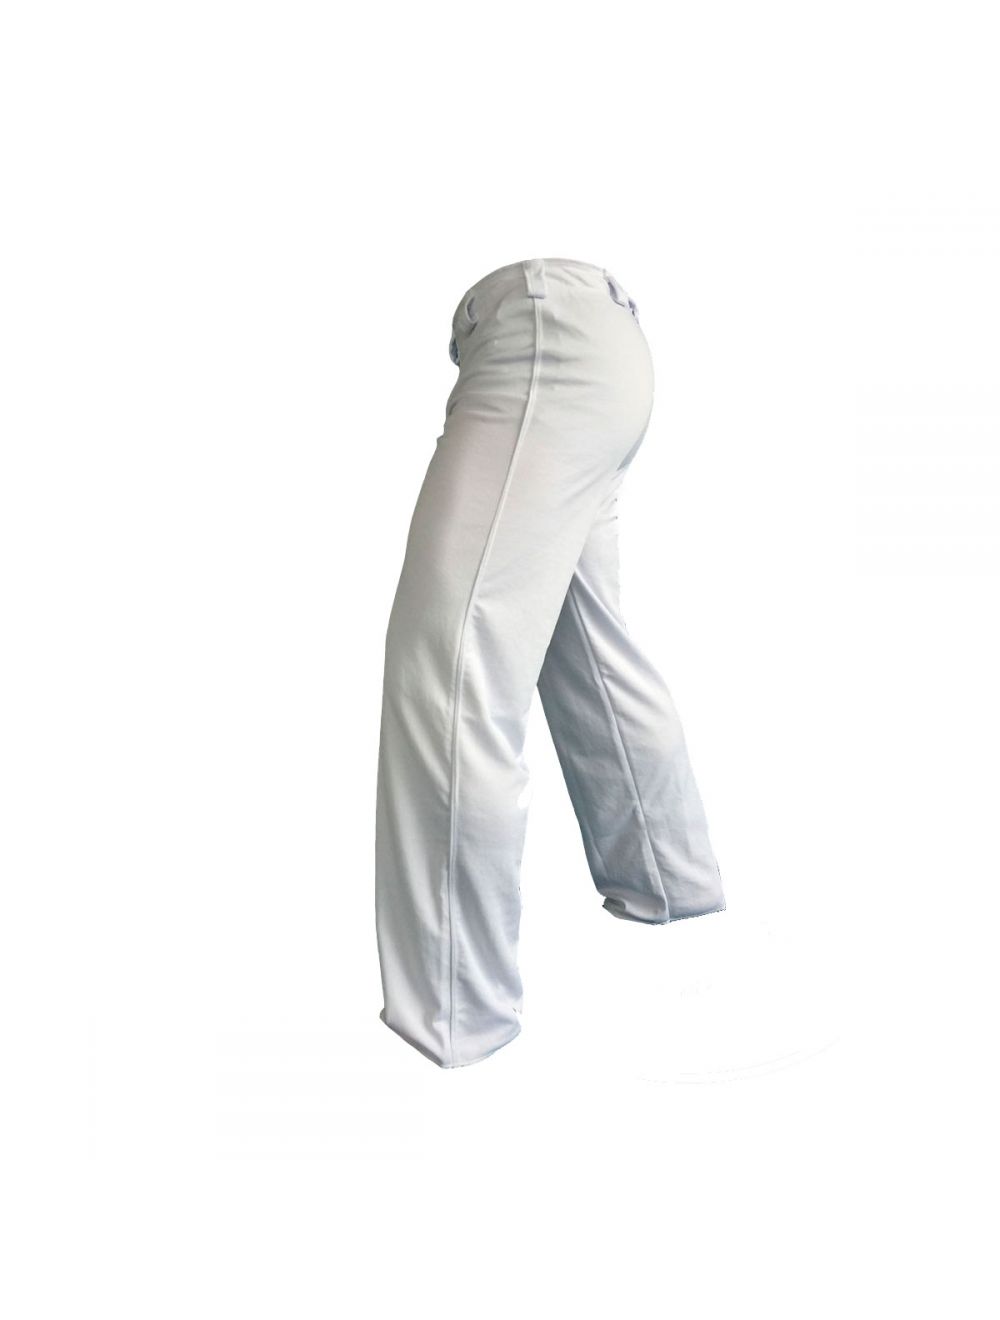 pantalon abada calca capoeira poliester